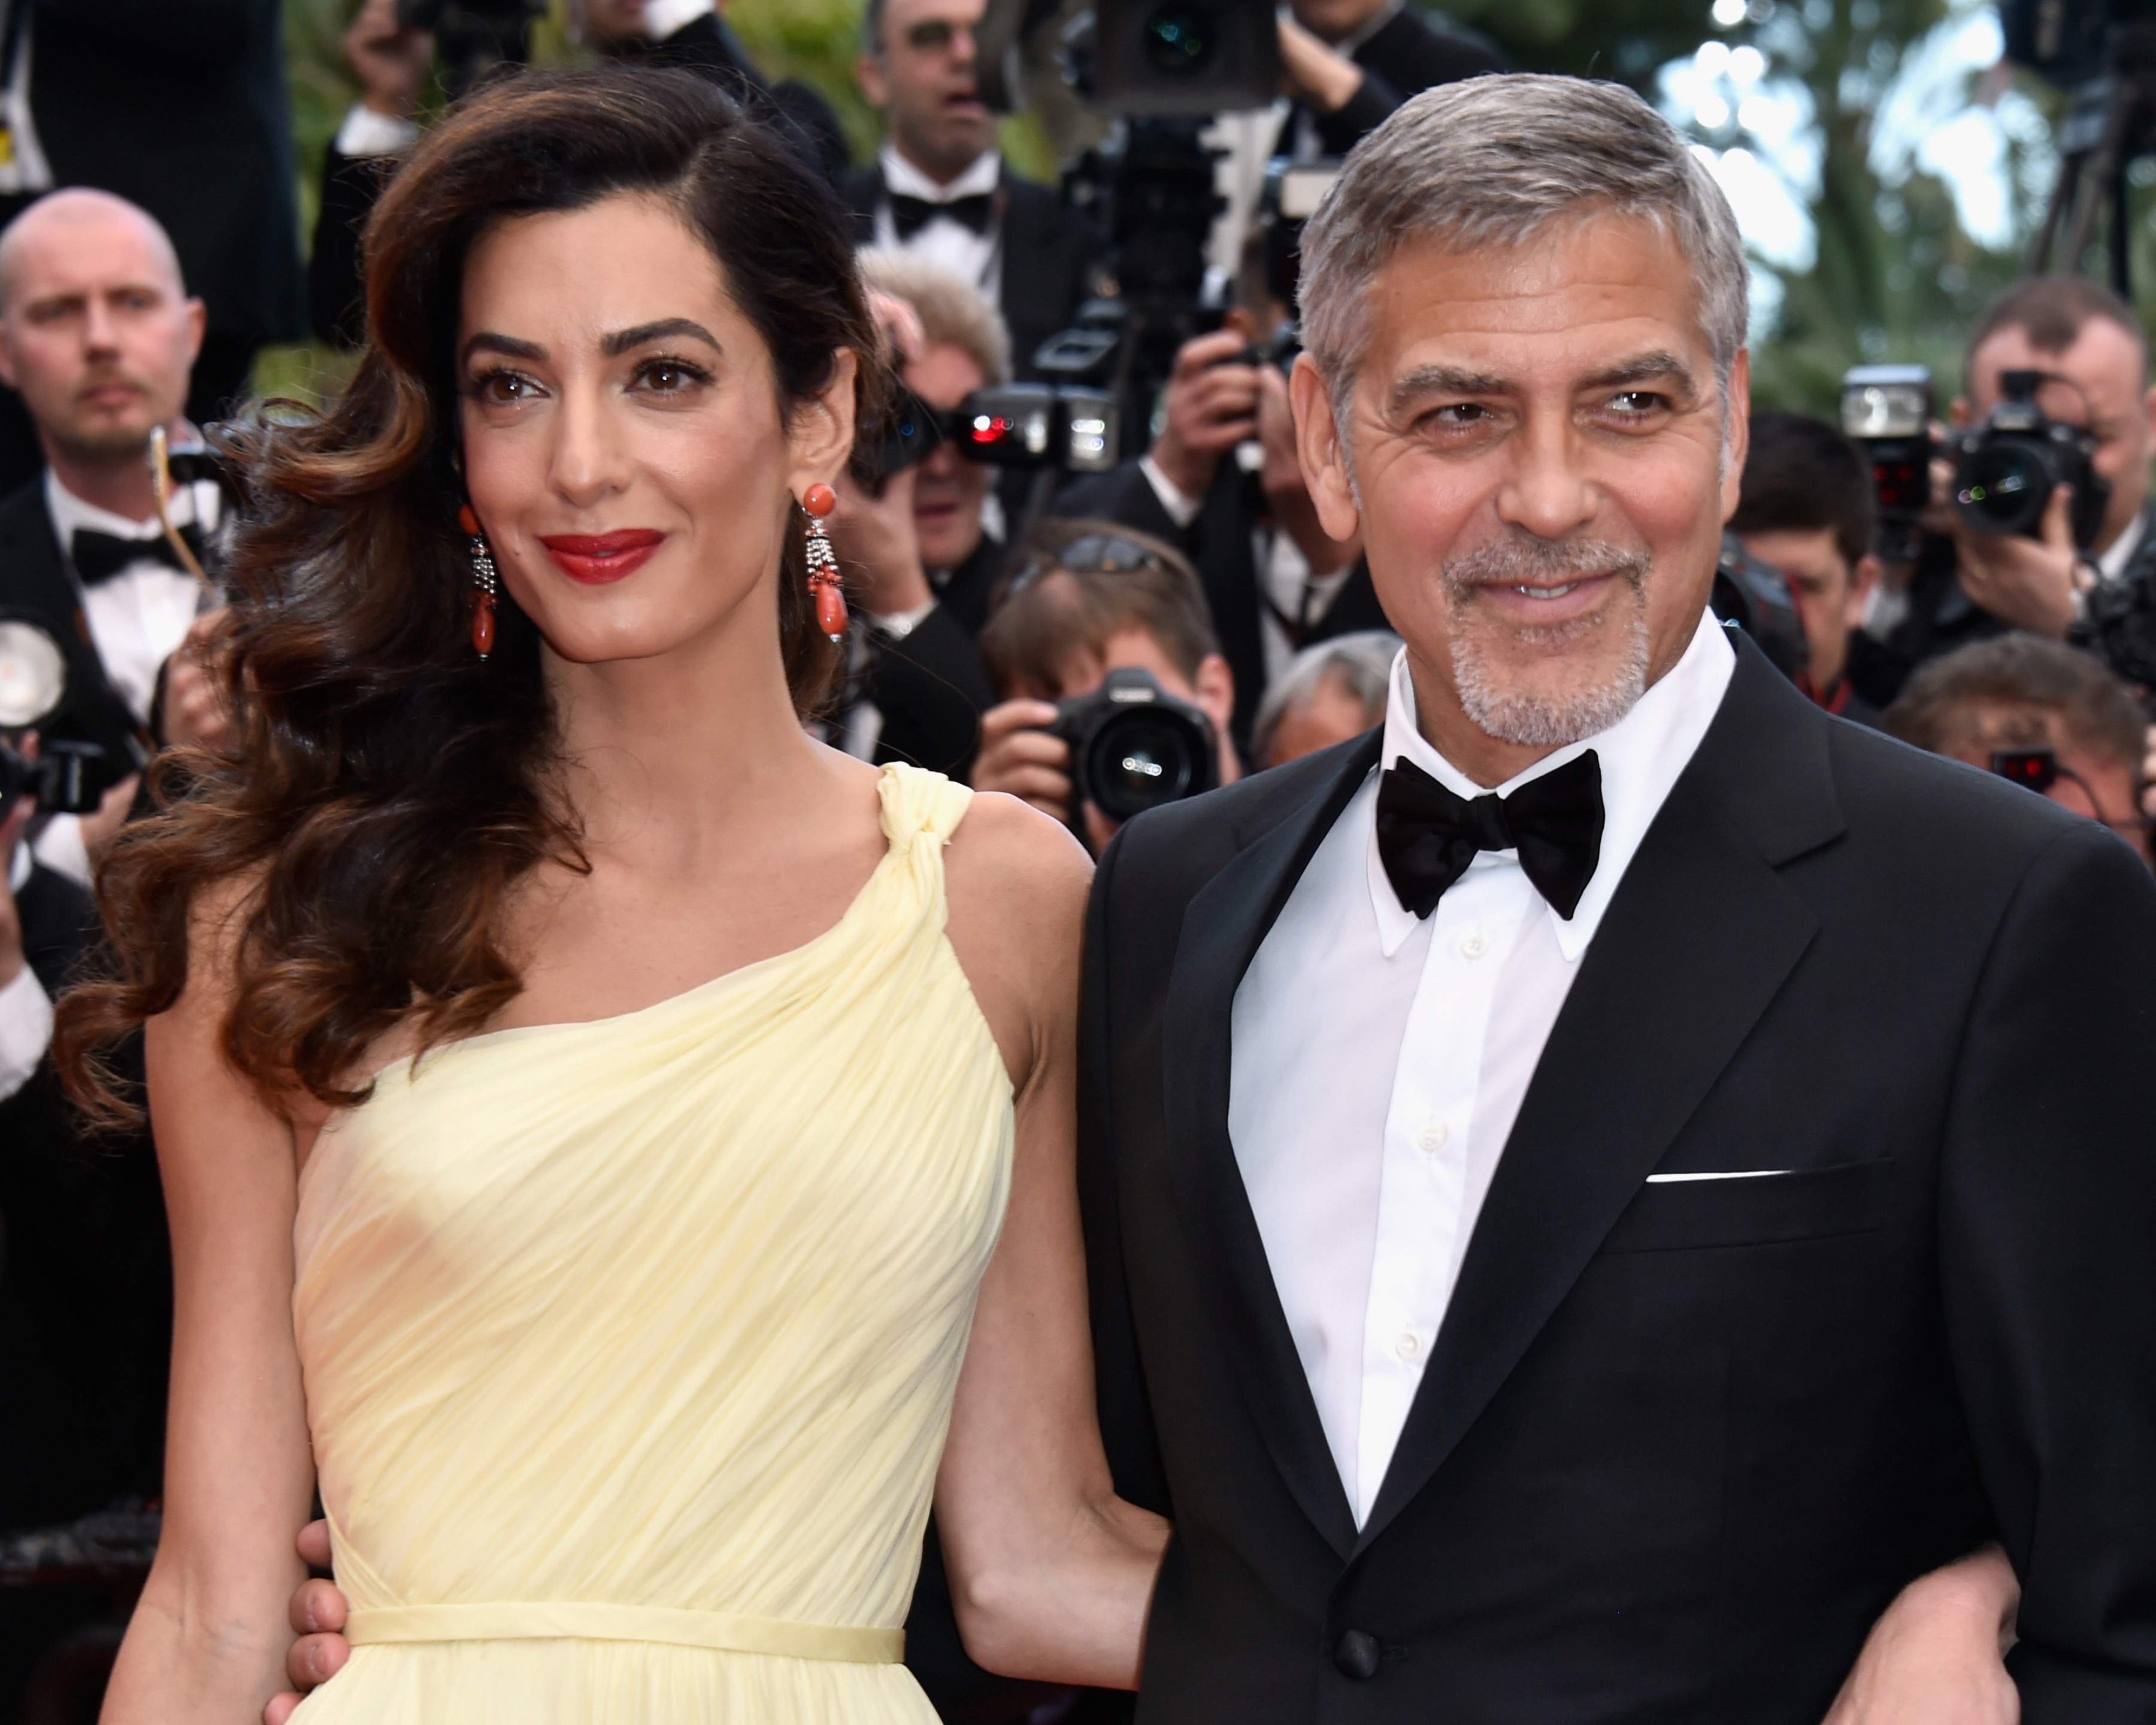 George y Amal Clooney donaron 100 mil dólares a víctimas en Beirut